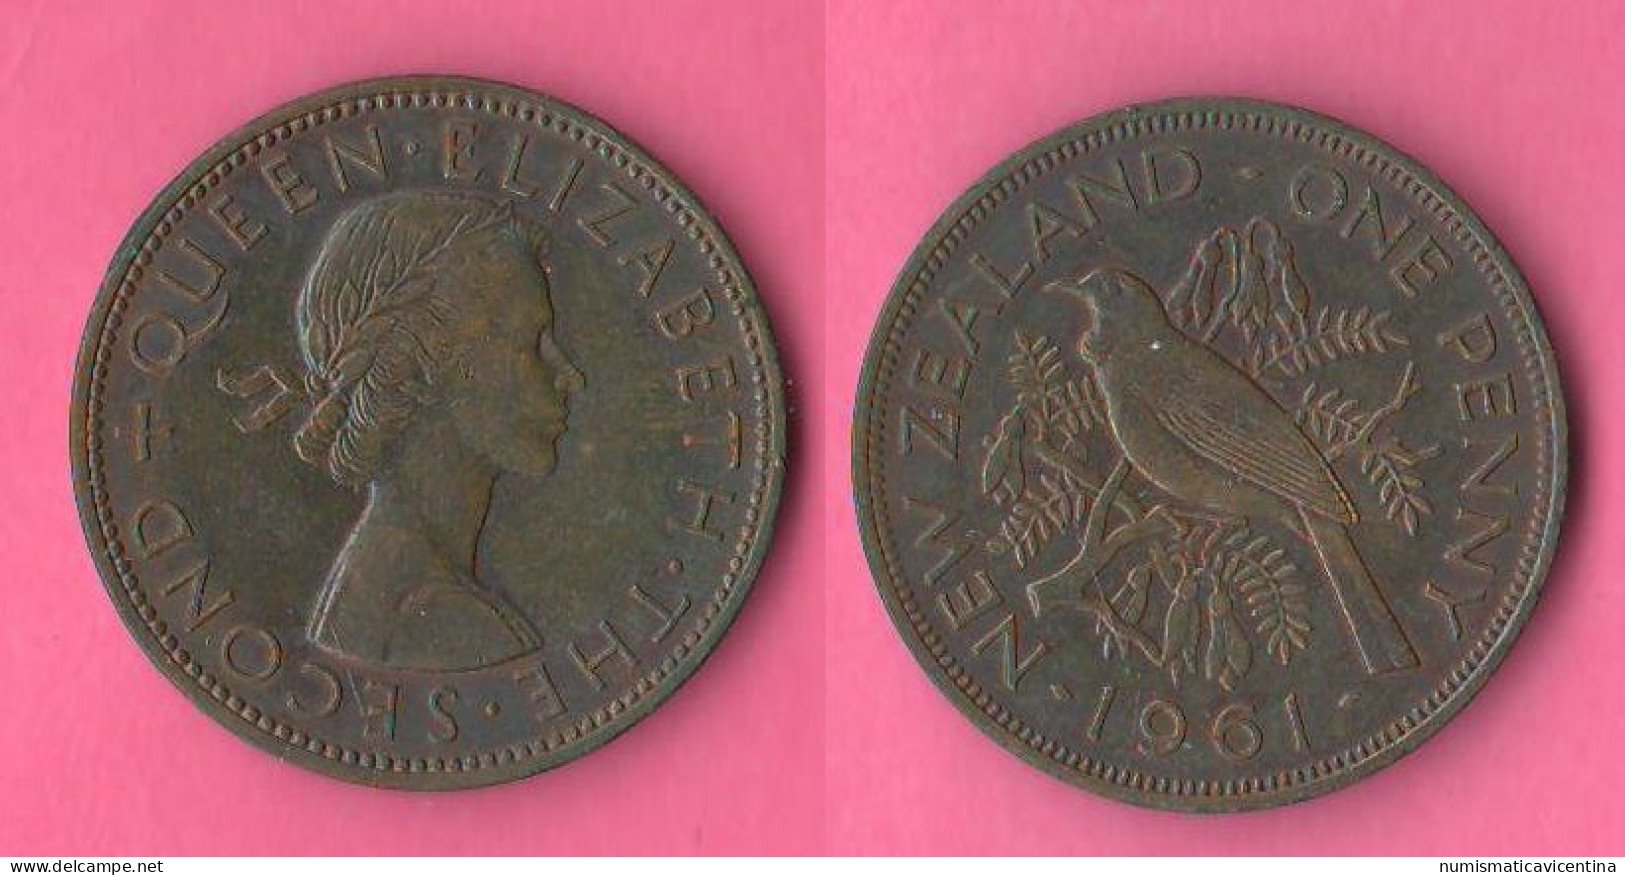 New Zealand Penny 1961 Nuova Zelanda Nouvelle Zélande Queen Elizabeth Bronze Coin - Nieuw-Zeeland